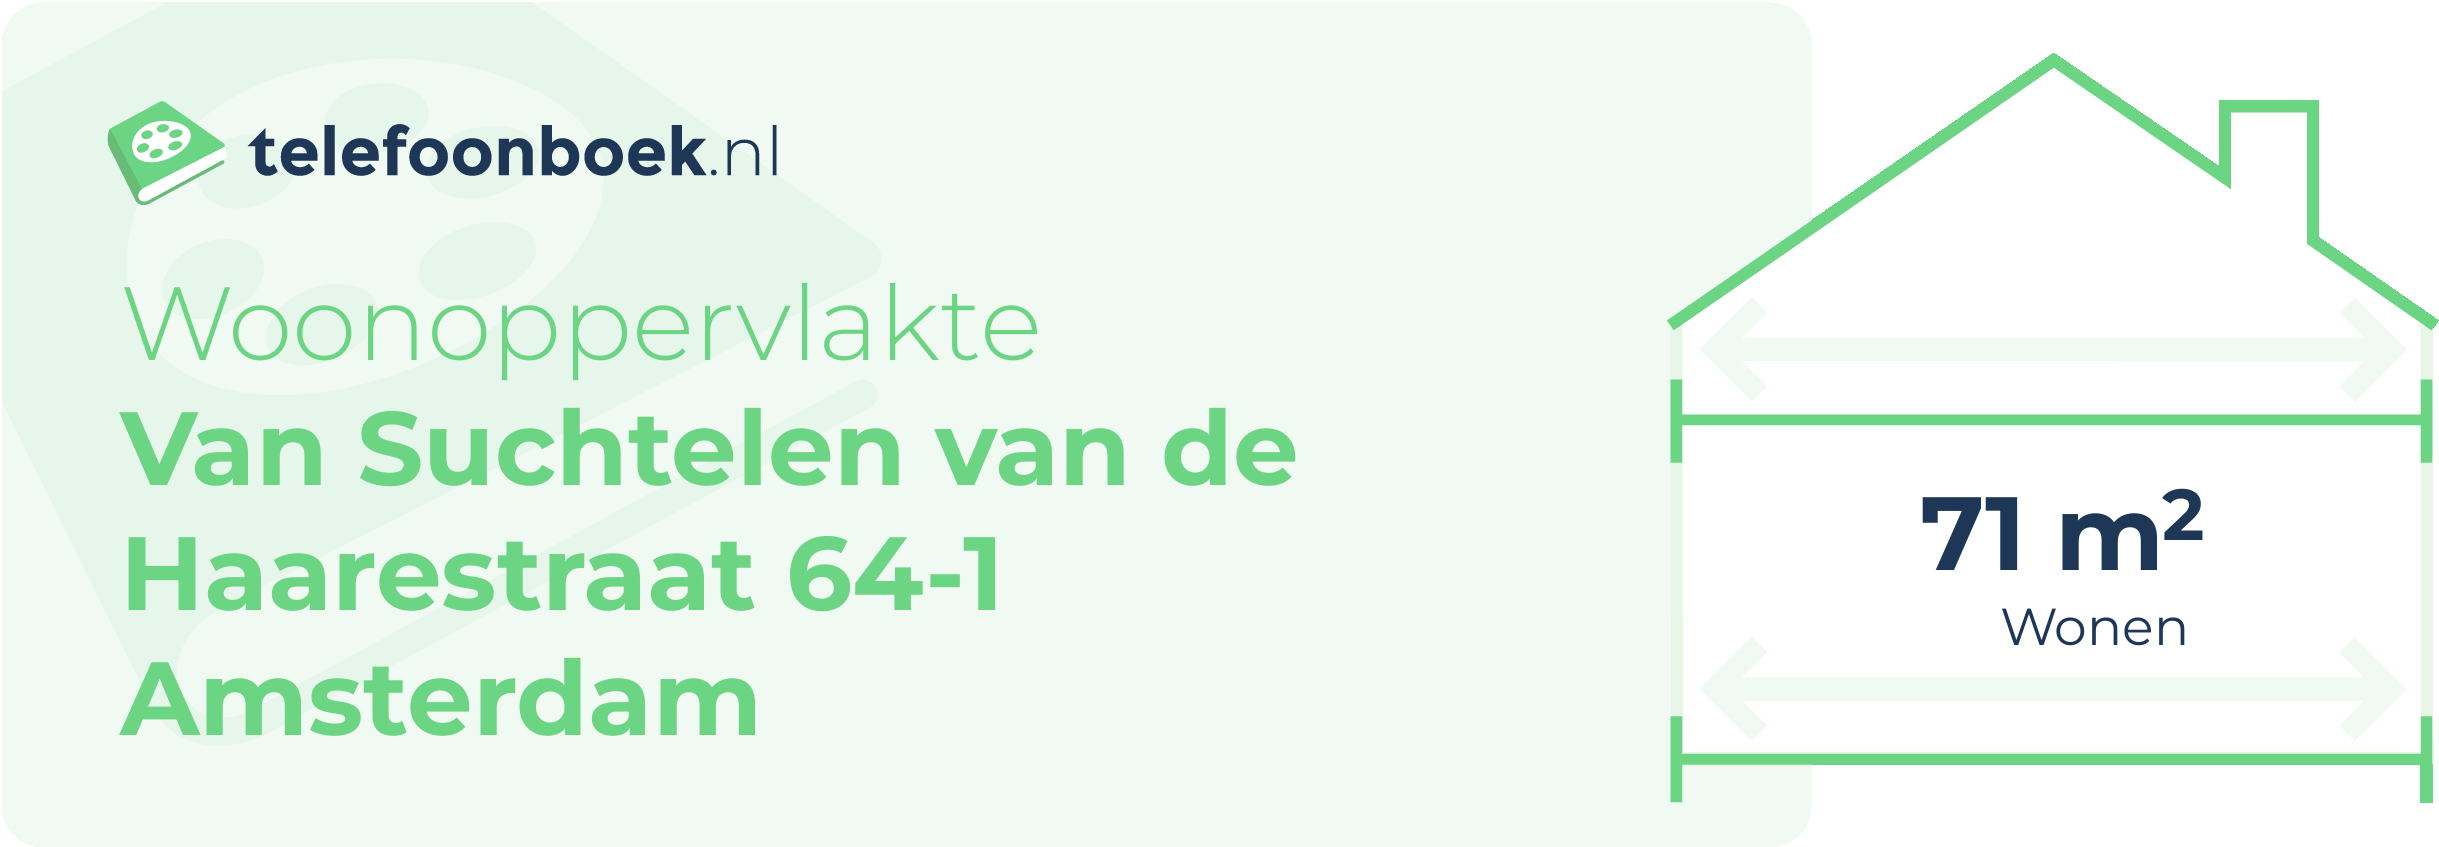 Woonoppervlakte Van Suchtelen Van De Haarestraat 64-1 Amsterdam